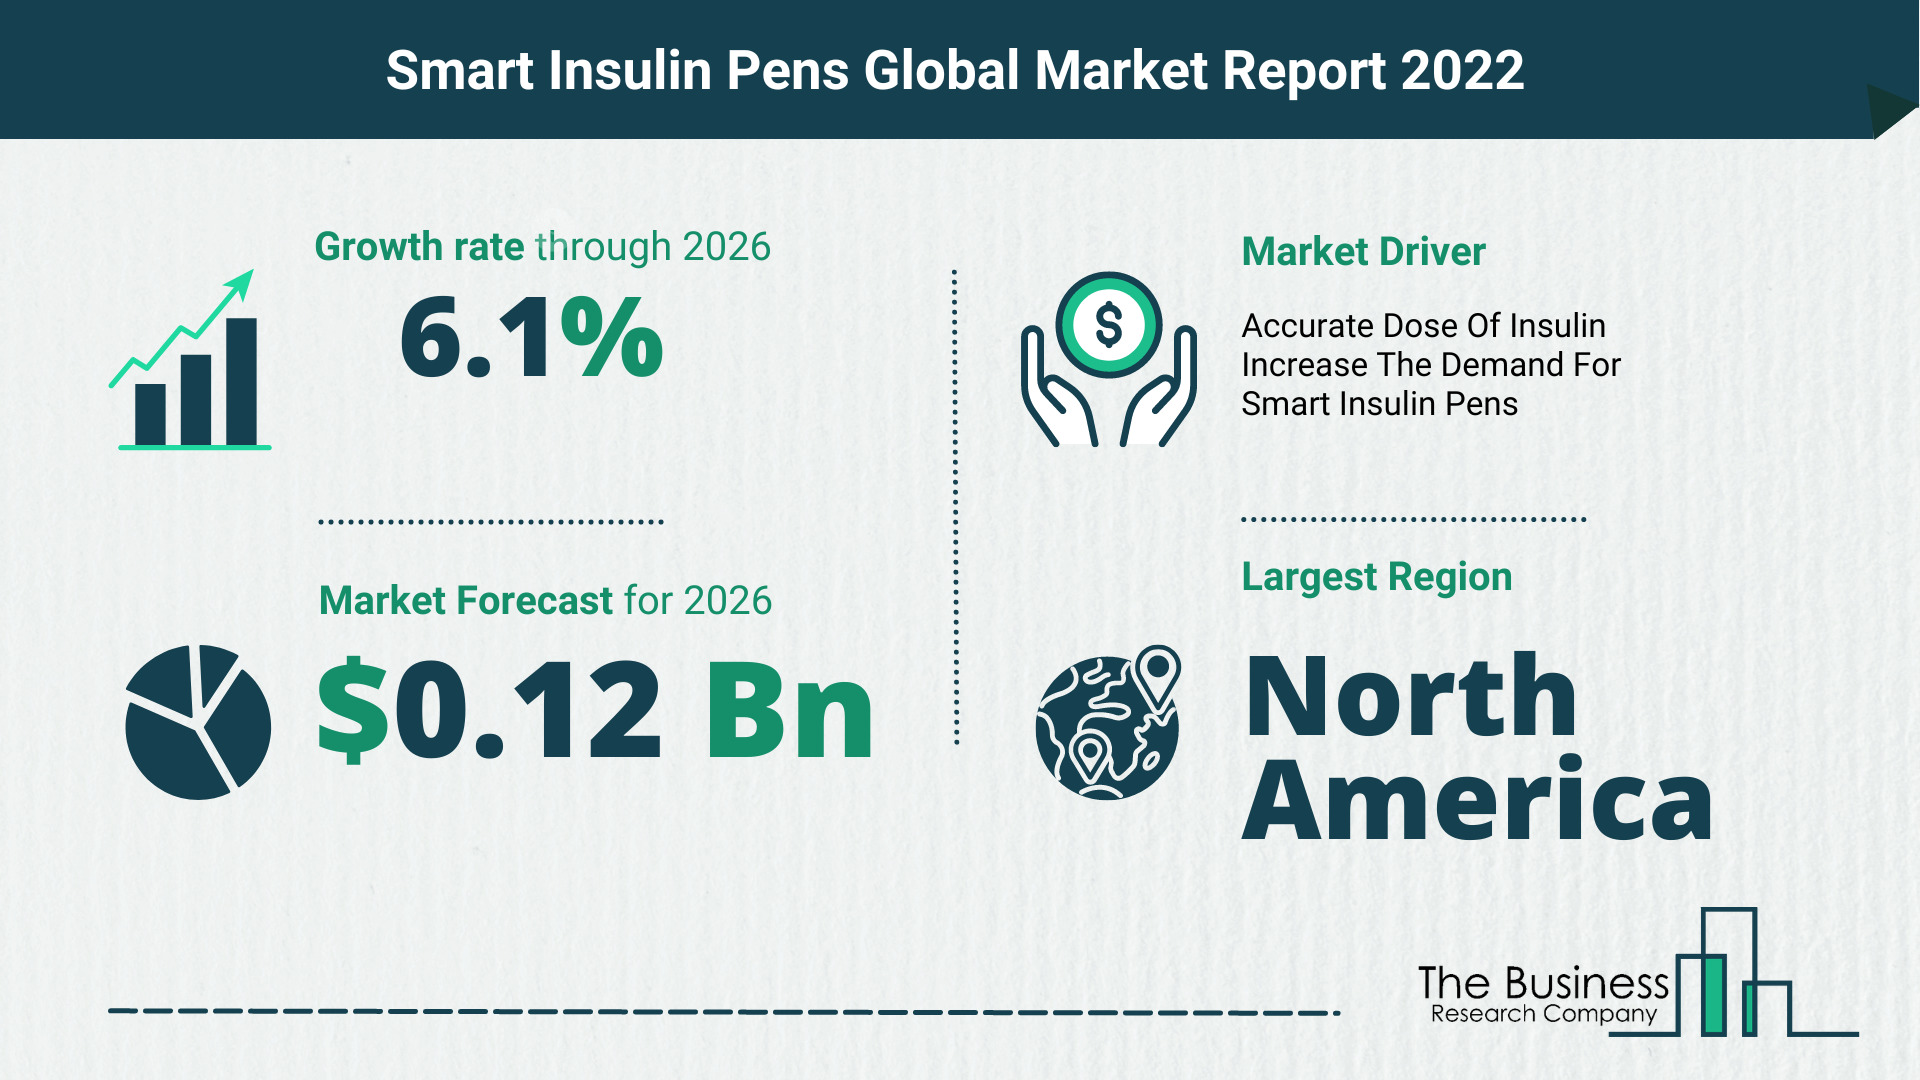 Global Smart Insulin Pens Market Size